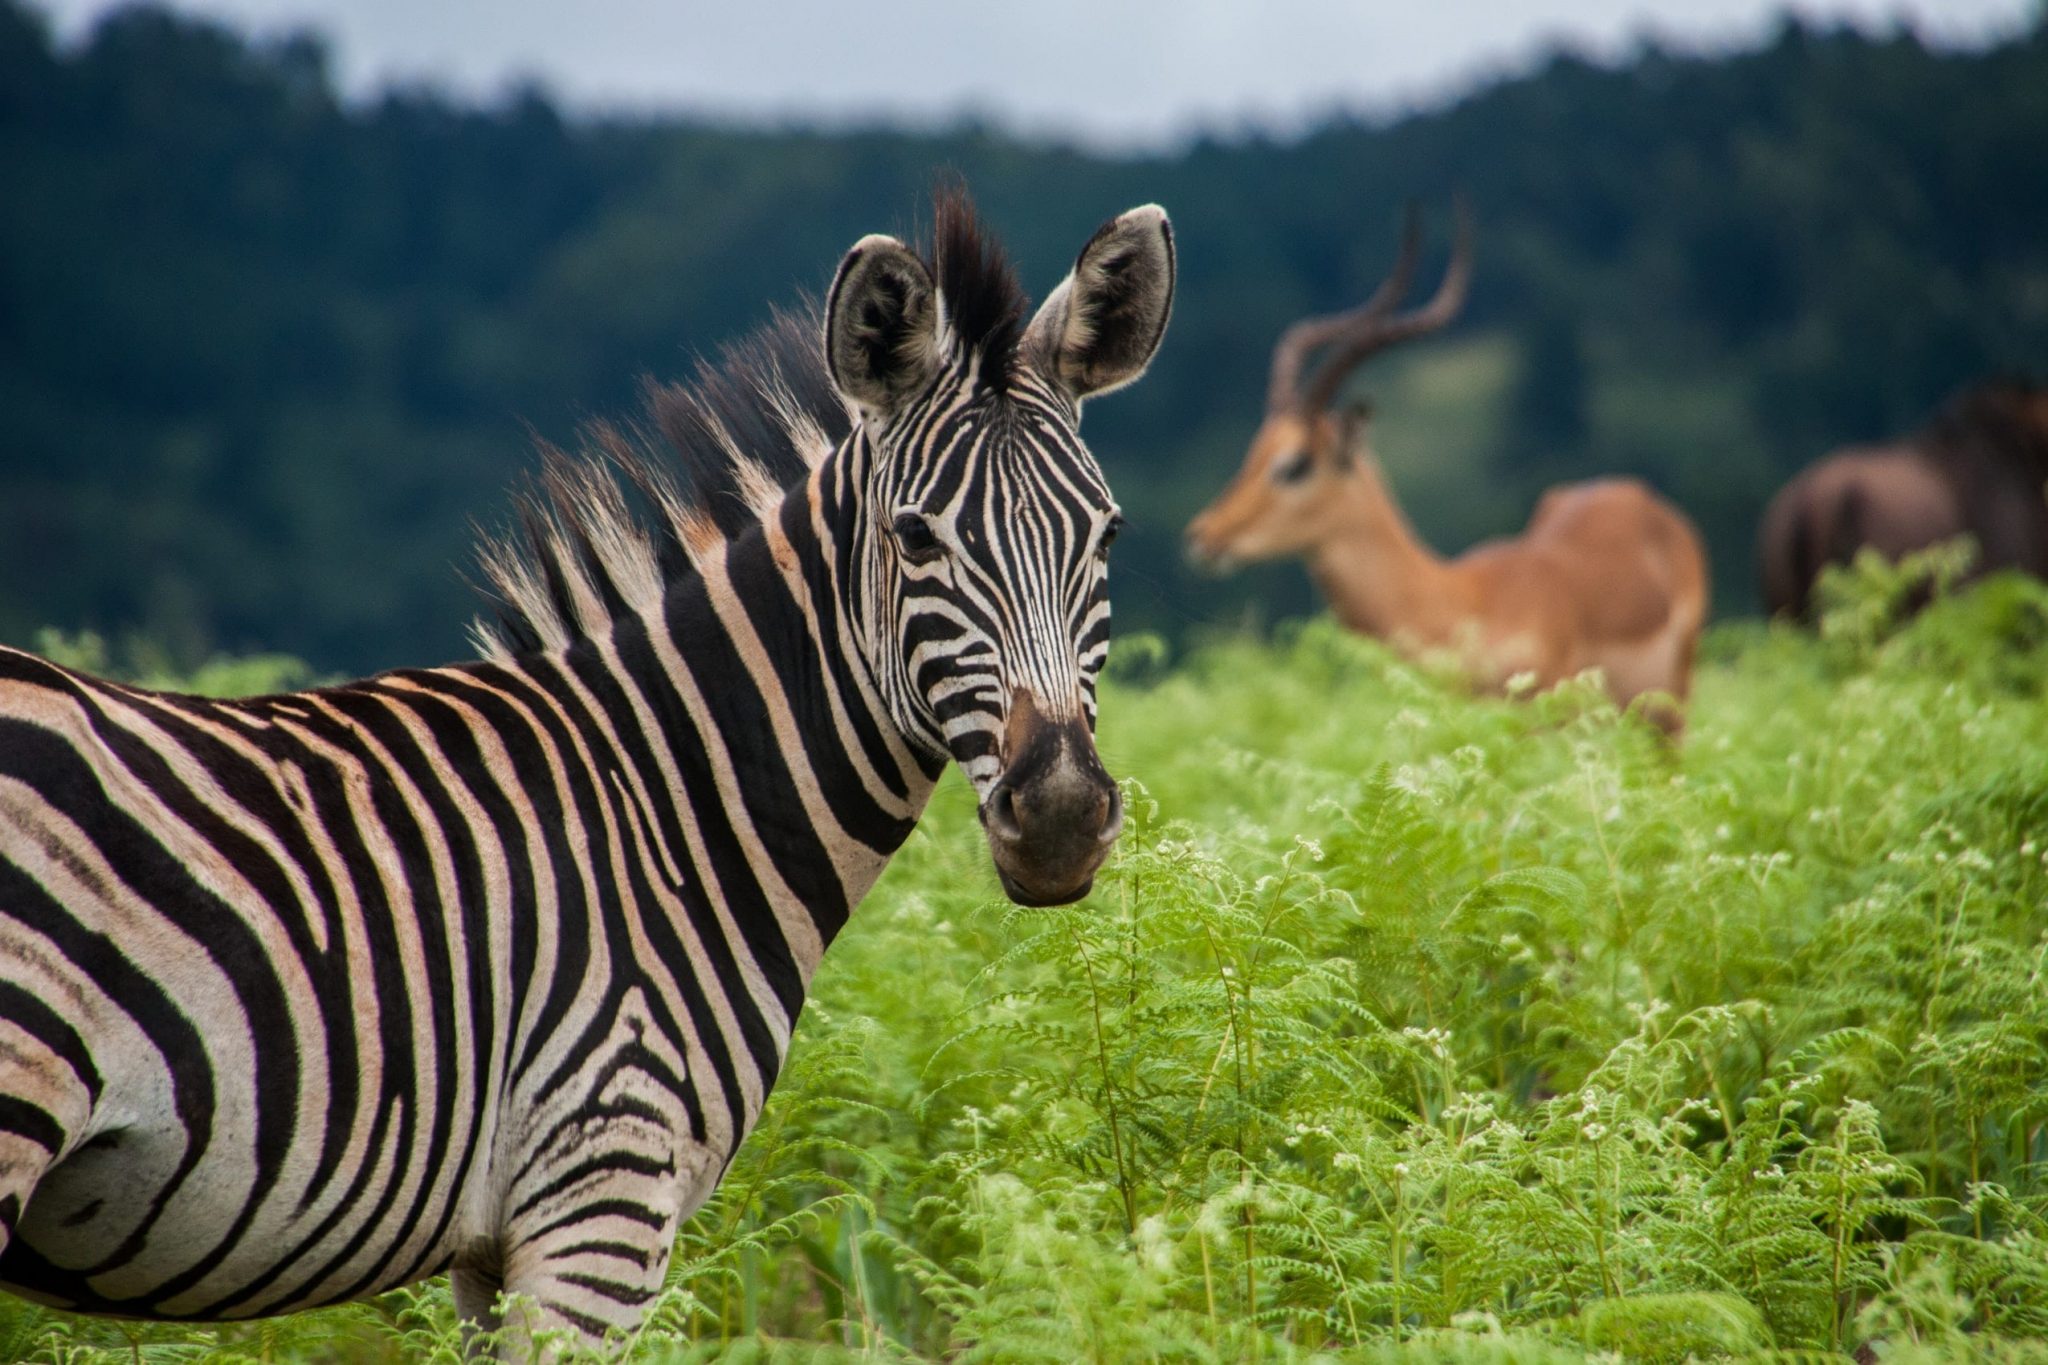 Alba wildlife. ЮАР природа животные. Зебры и антилопы. Зебра в зеленой траве. Зебра ест траву.